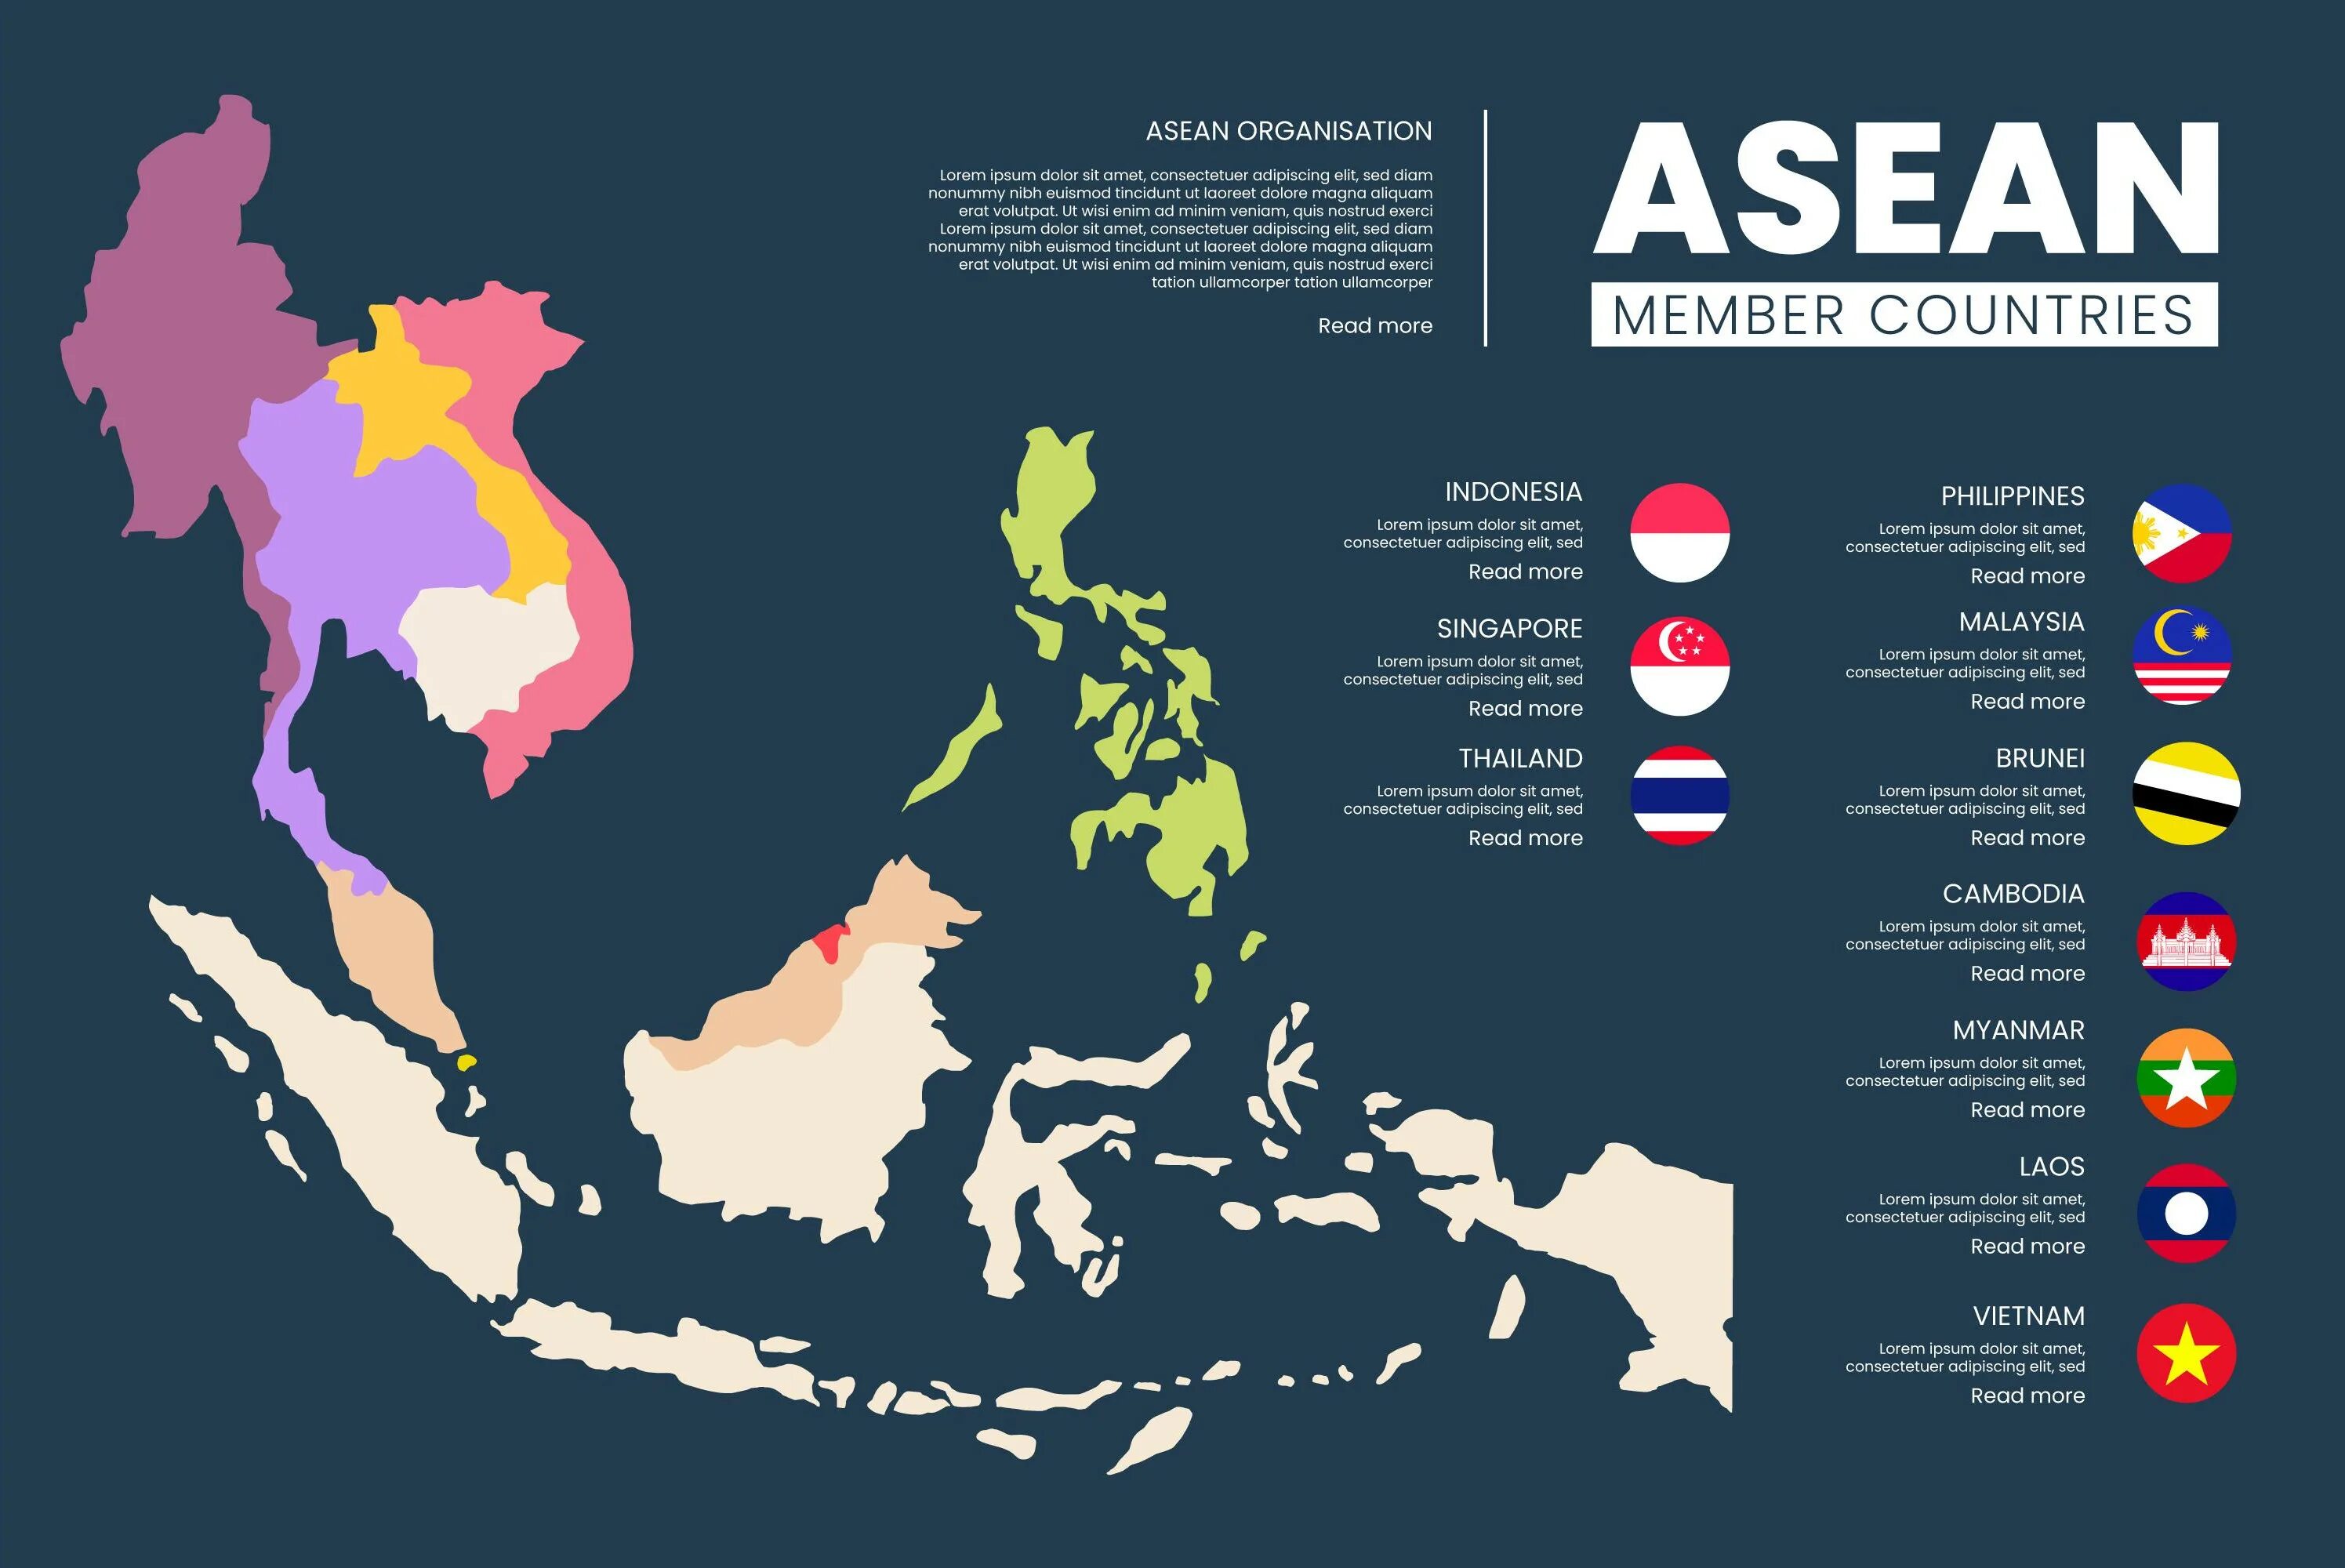 Асеан на карте. Страны АСЕАН на карте. Политическая карта АСЕАН.